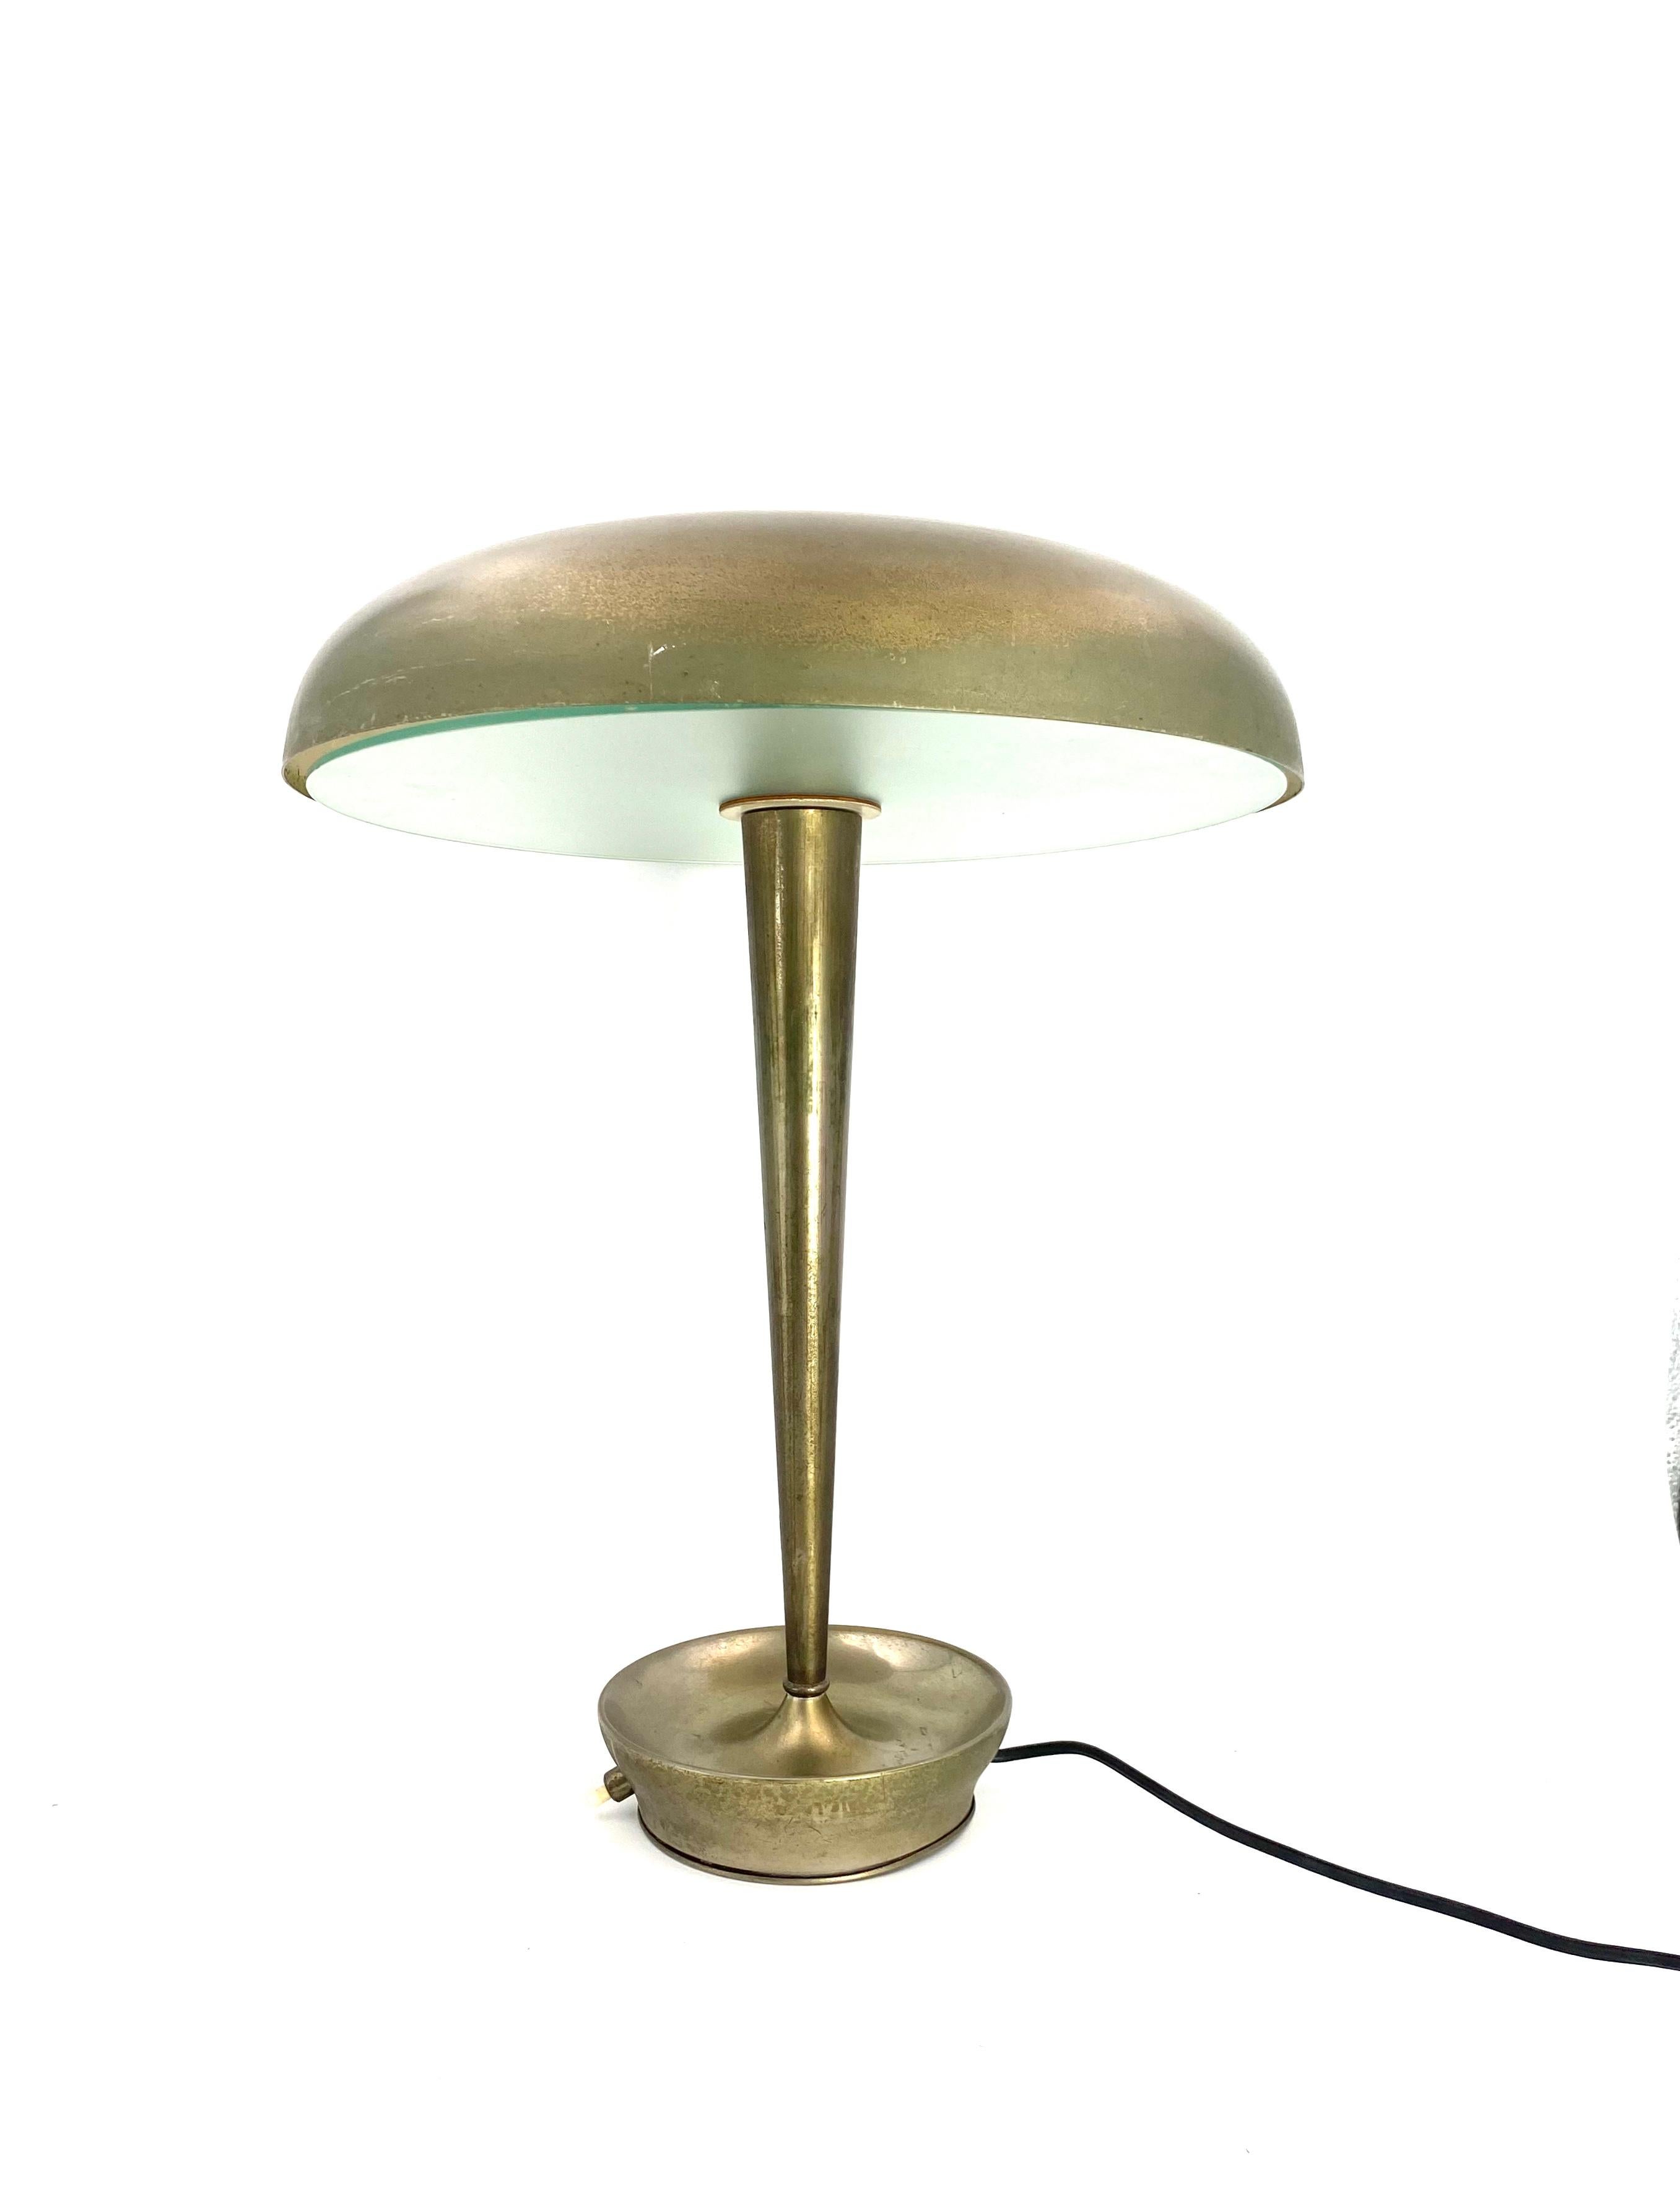 Rare lampe de bureau / lampe de table mod. D 4639, Stilnovo, Milan Italie, vers 1950

Laiton patiné, métal chromé, laiton et verre opaque. Lampe triple. Sous-face imprimée 